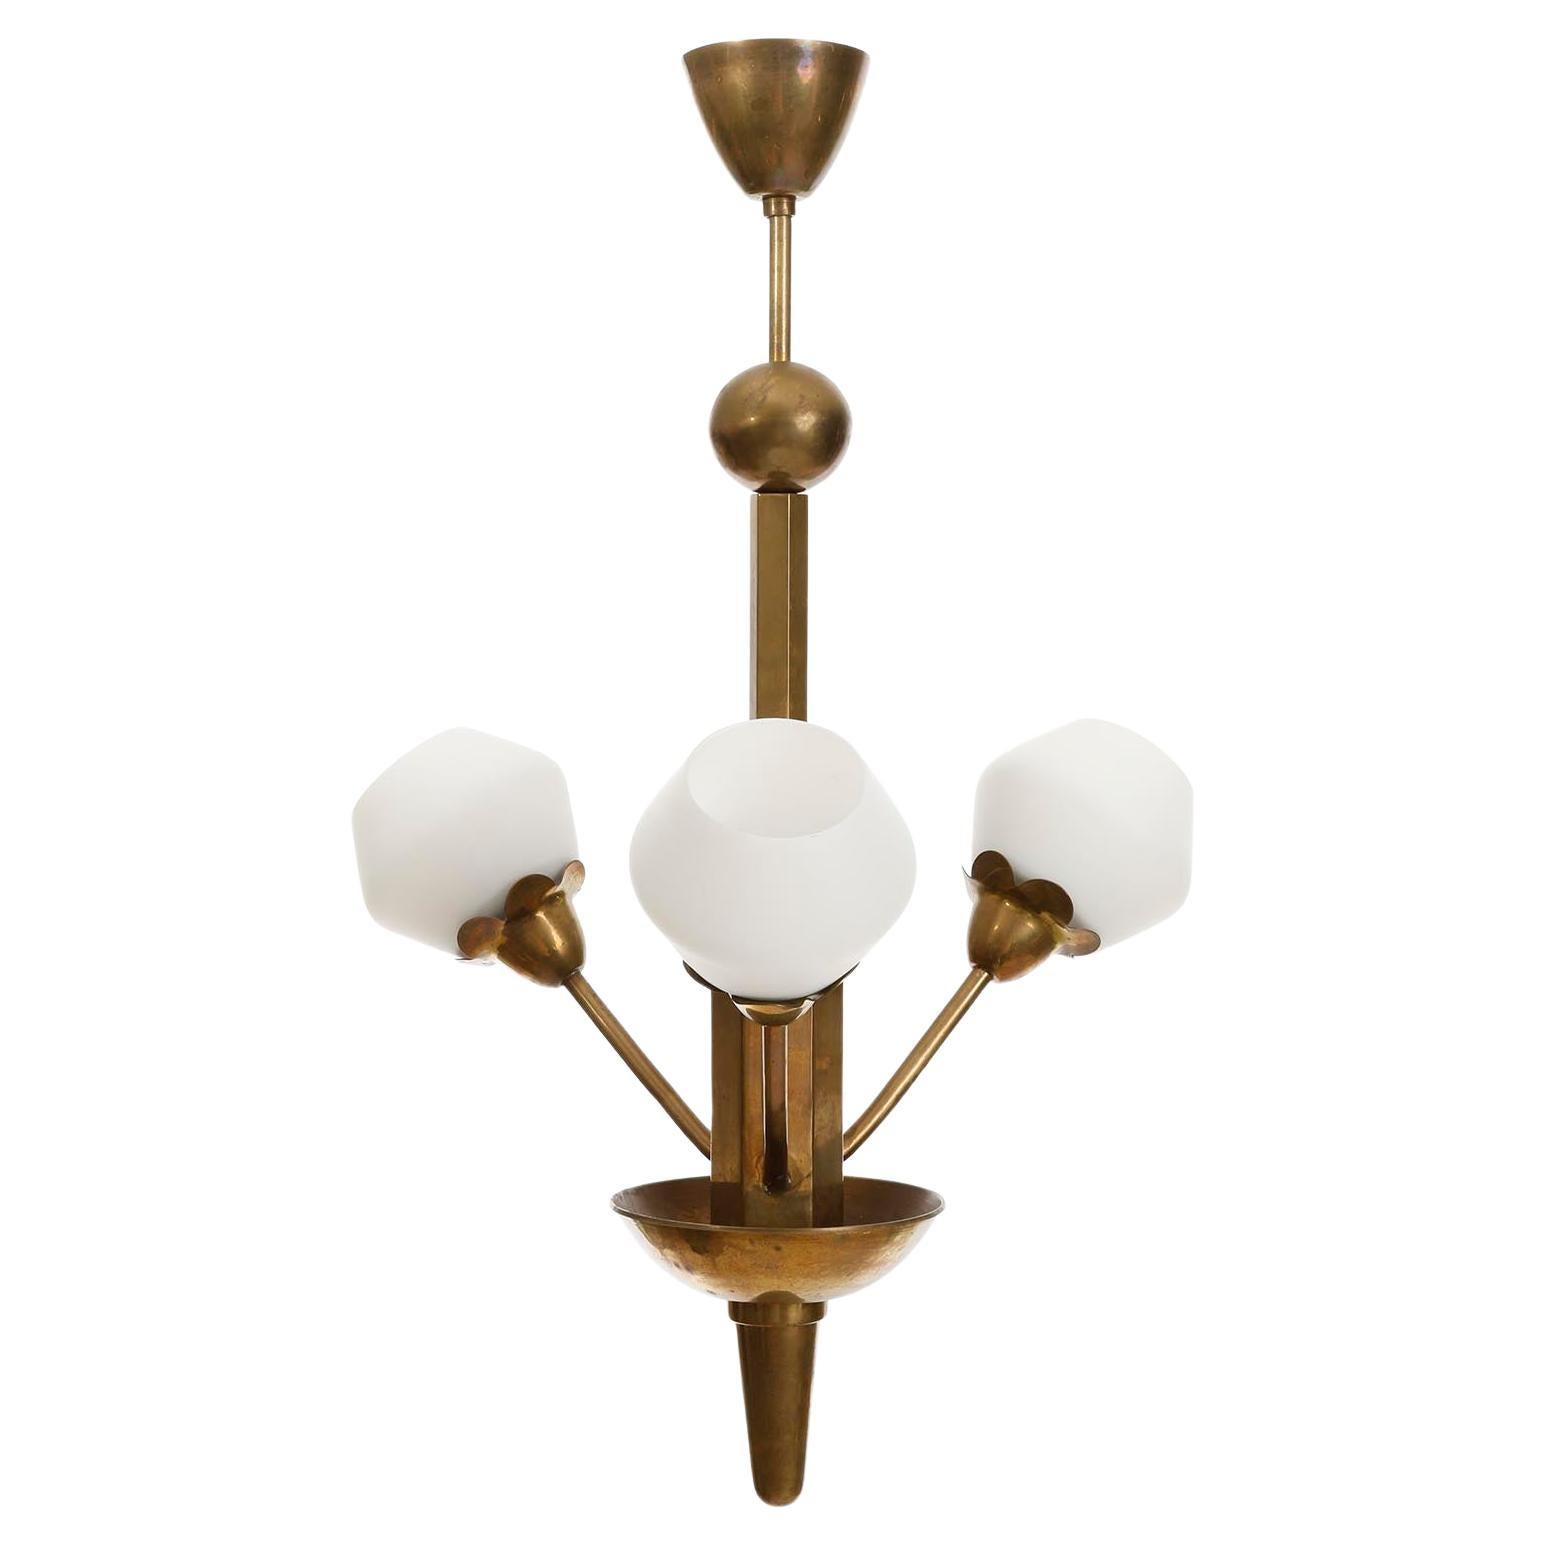 Charmante lampe suspendue à 3 bras de forme organique fabriquée en Suède, vers 1930.
Elle est composée d'une structure en laiton ou en bronze patiné et d'abat-jour en verre opalin.
Chacun des trois bras accueille une douille pour une ampoule à culot